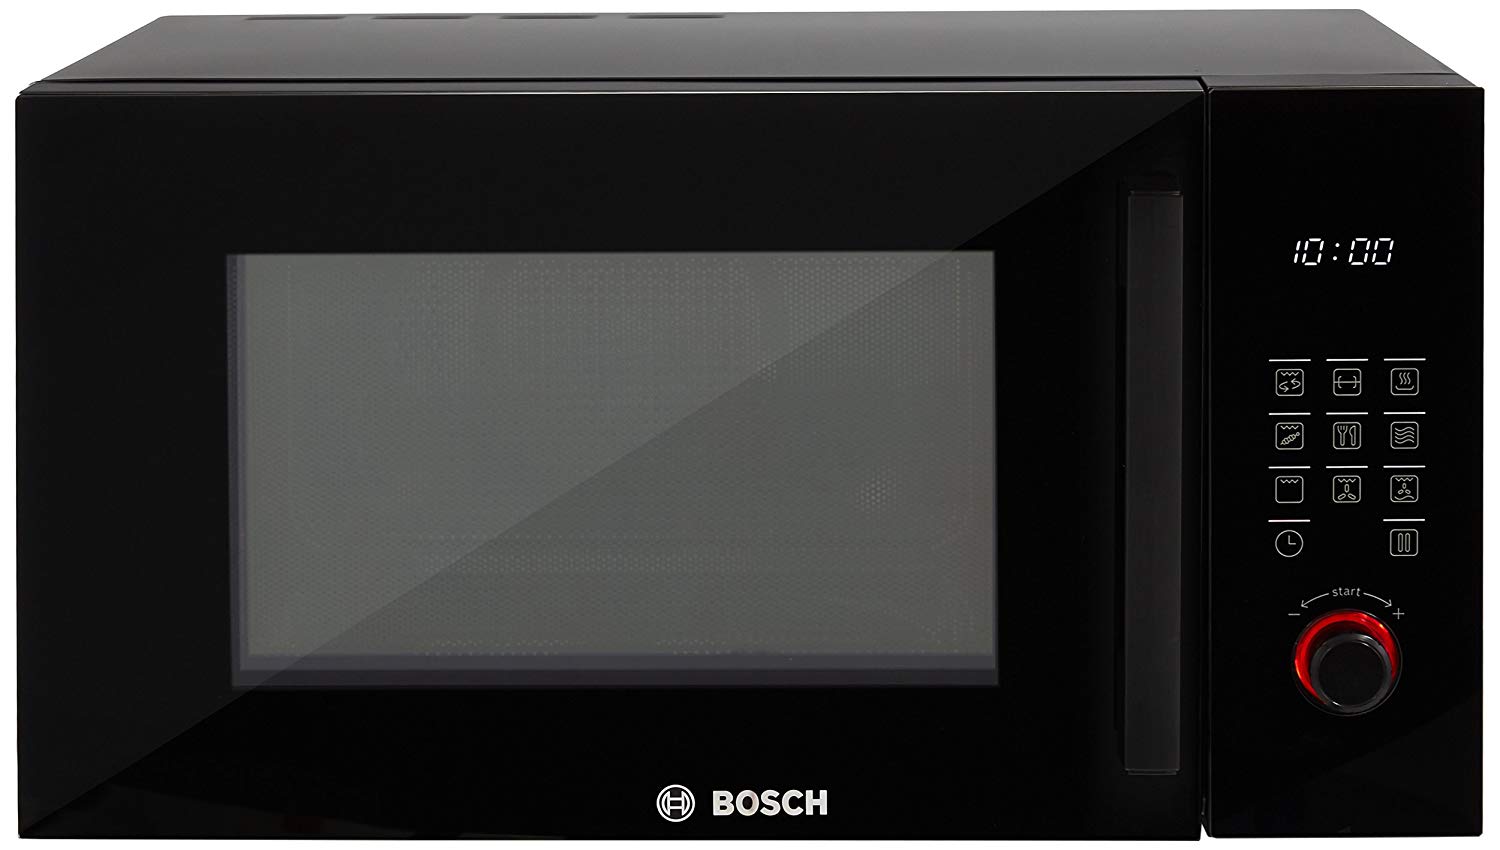 Встроенная свч бош. Микроволновая печь встраиваемая Bosch bfl524mb0. Микроволновая печь встраиваемая Bosch bfl623mc3. Микроволновая печь Bosch bel554ms0. Микроволновая печь встраиваемая Bosch bel554ms0.